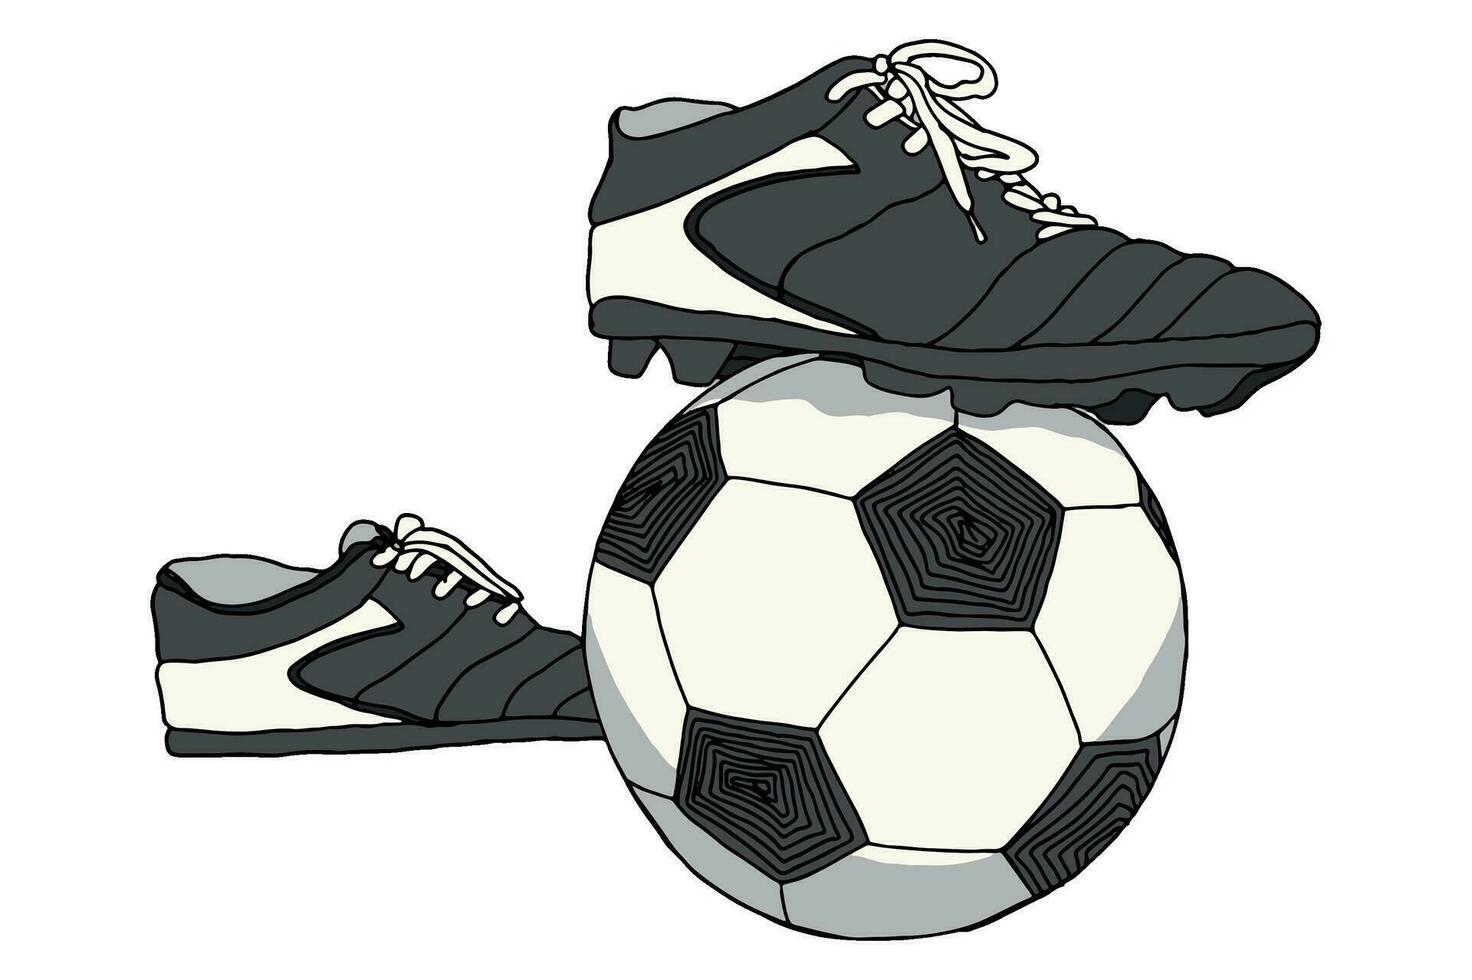 fotboll sko är sparkar de boll vektor